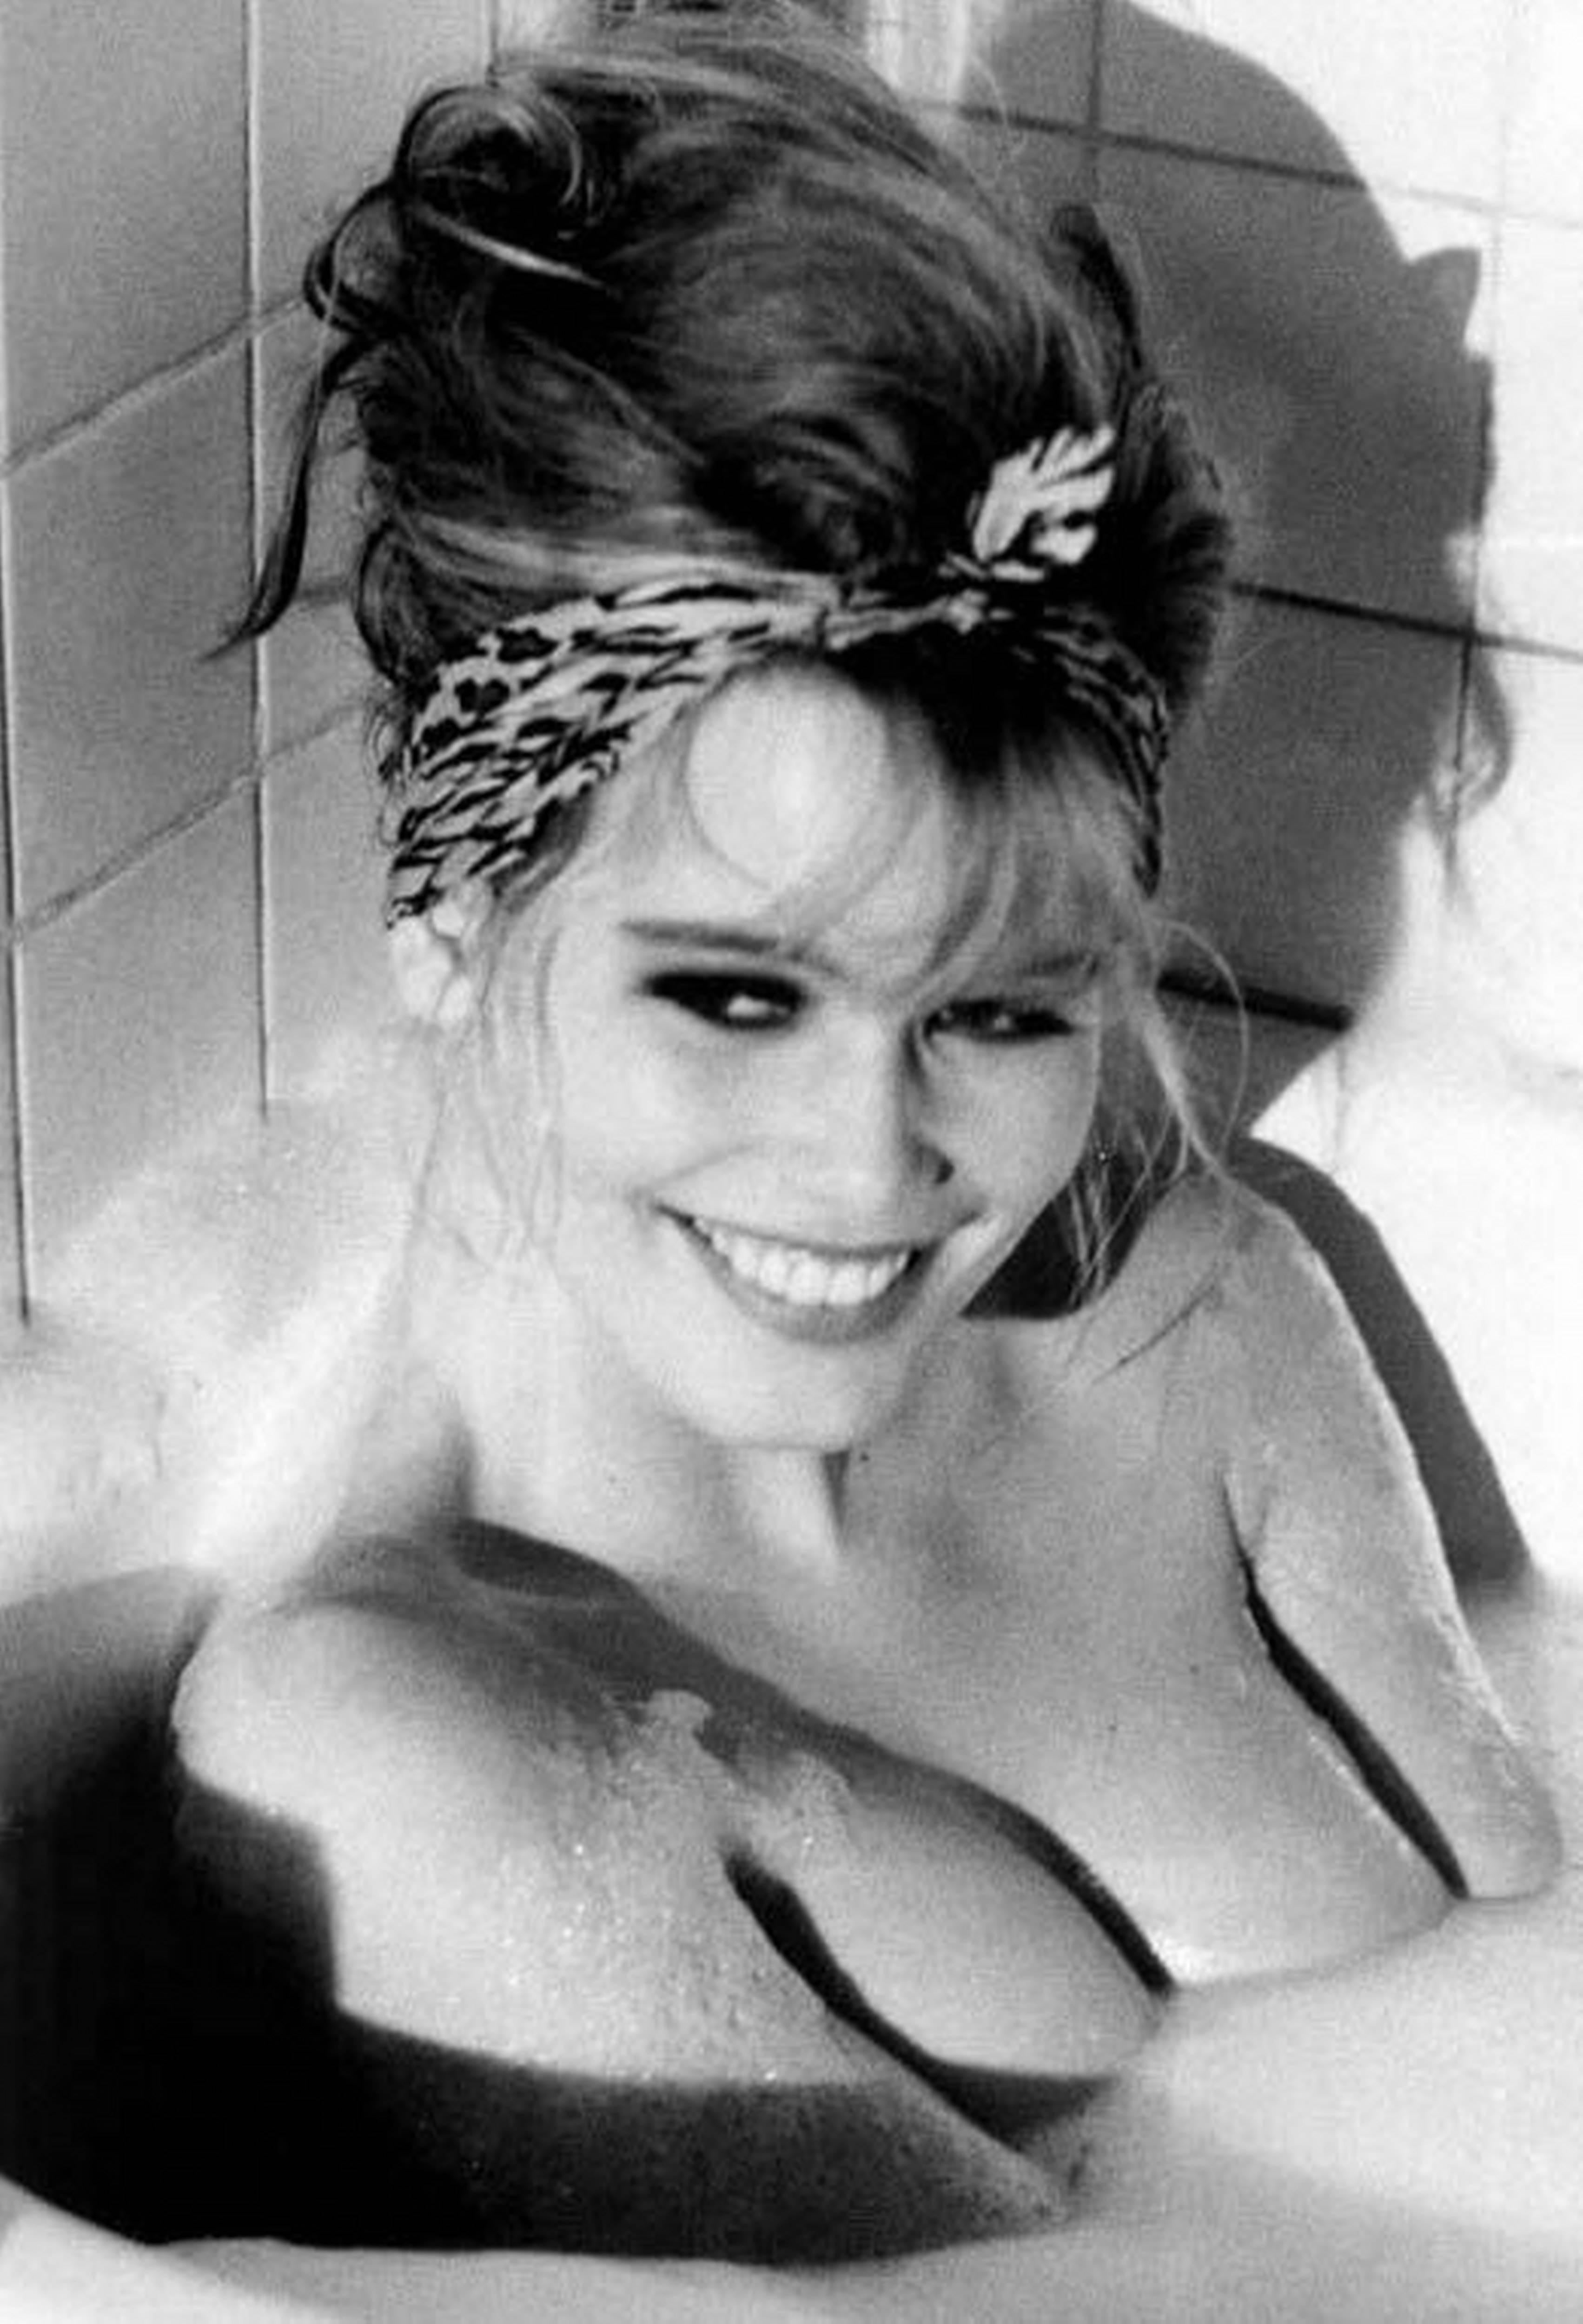 Ellen von Unwerth Black and White Photograph - Claudia Schiffer in Bathtub